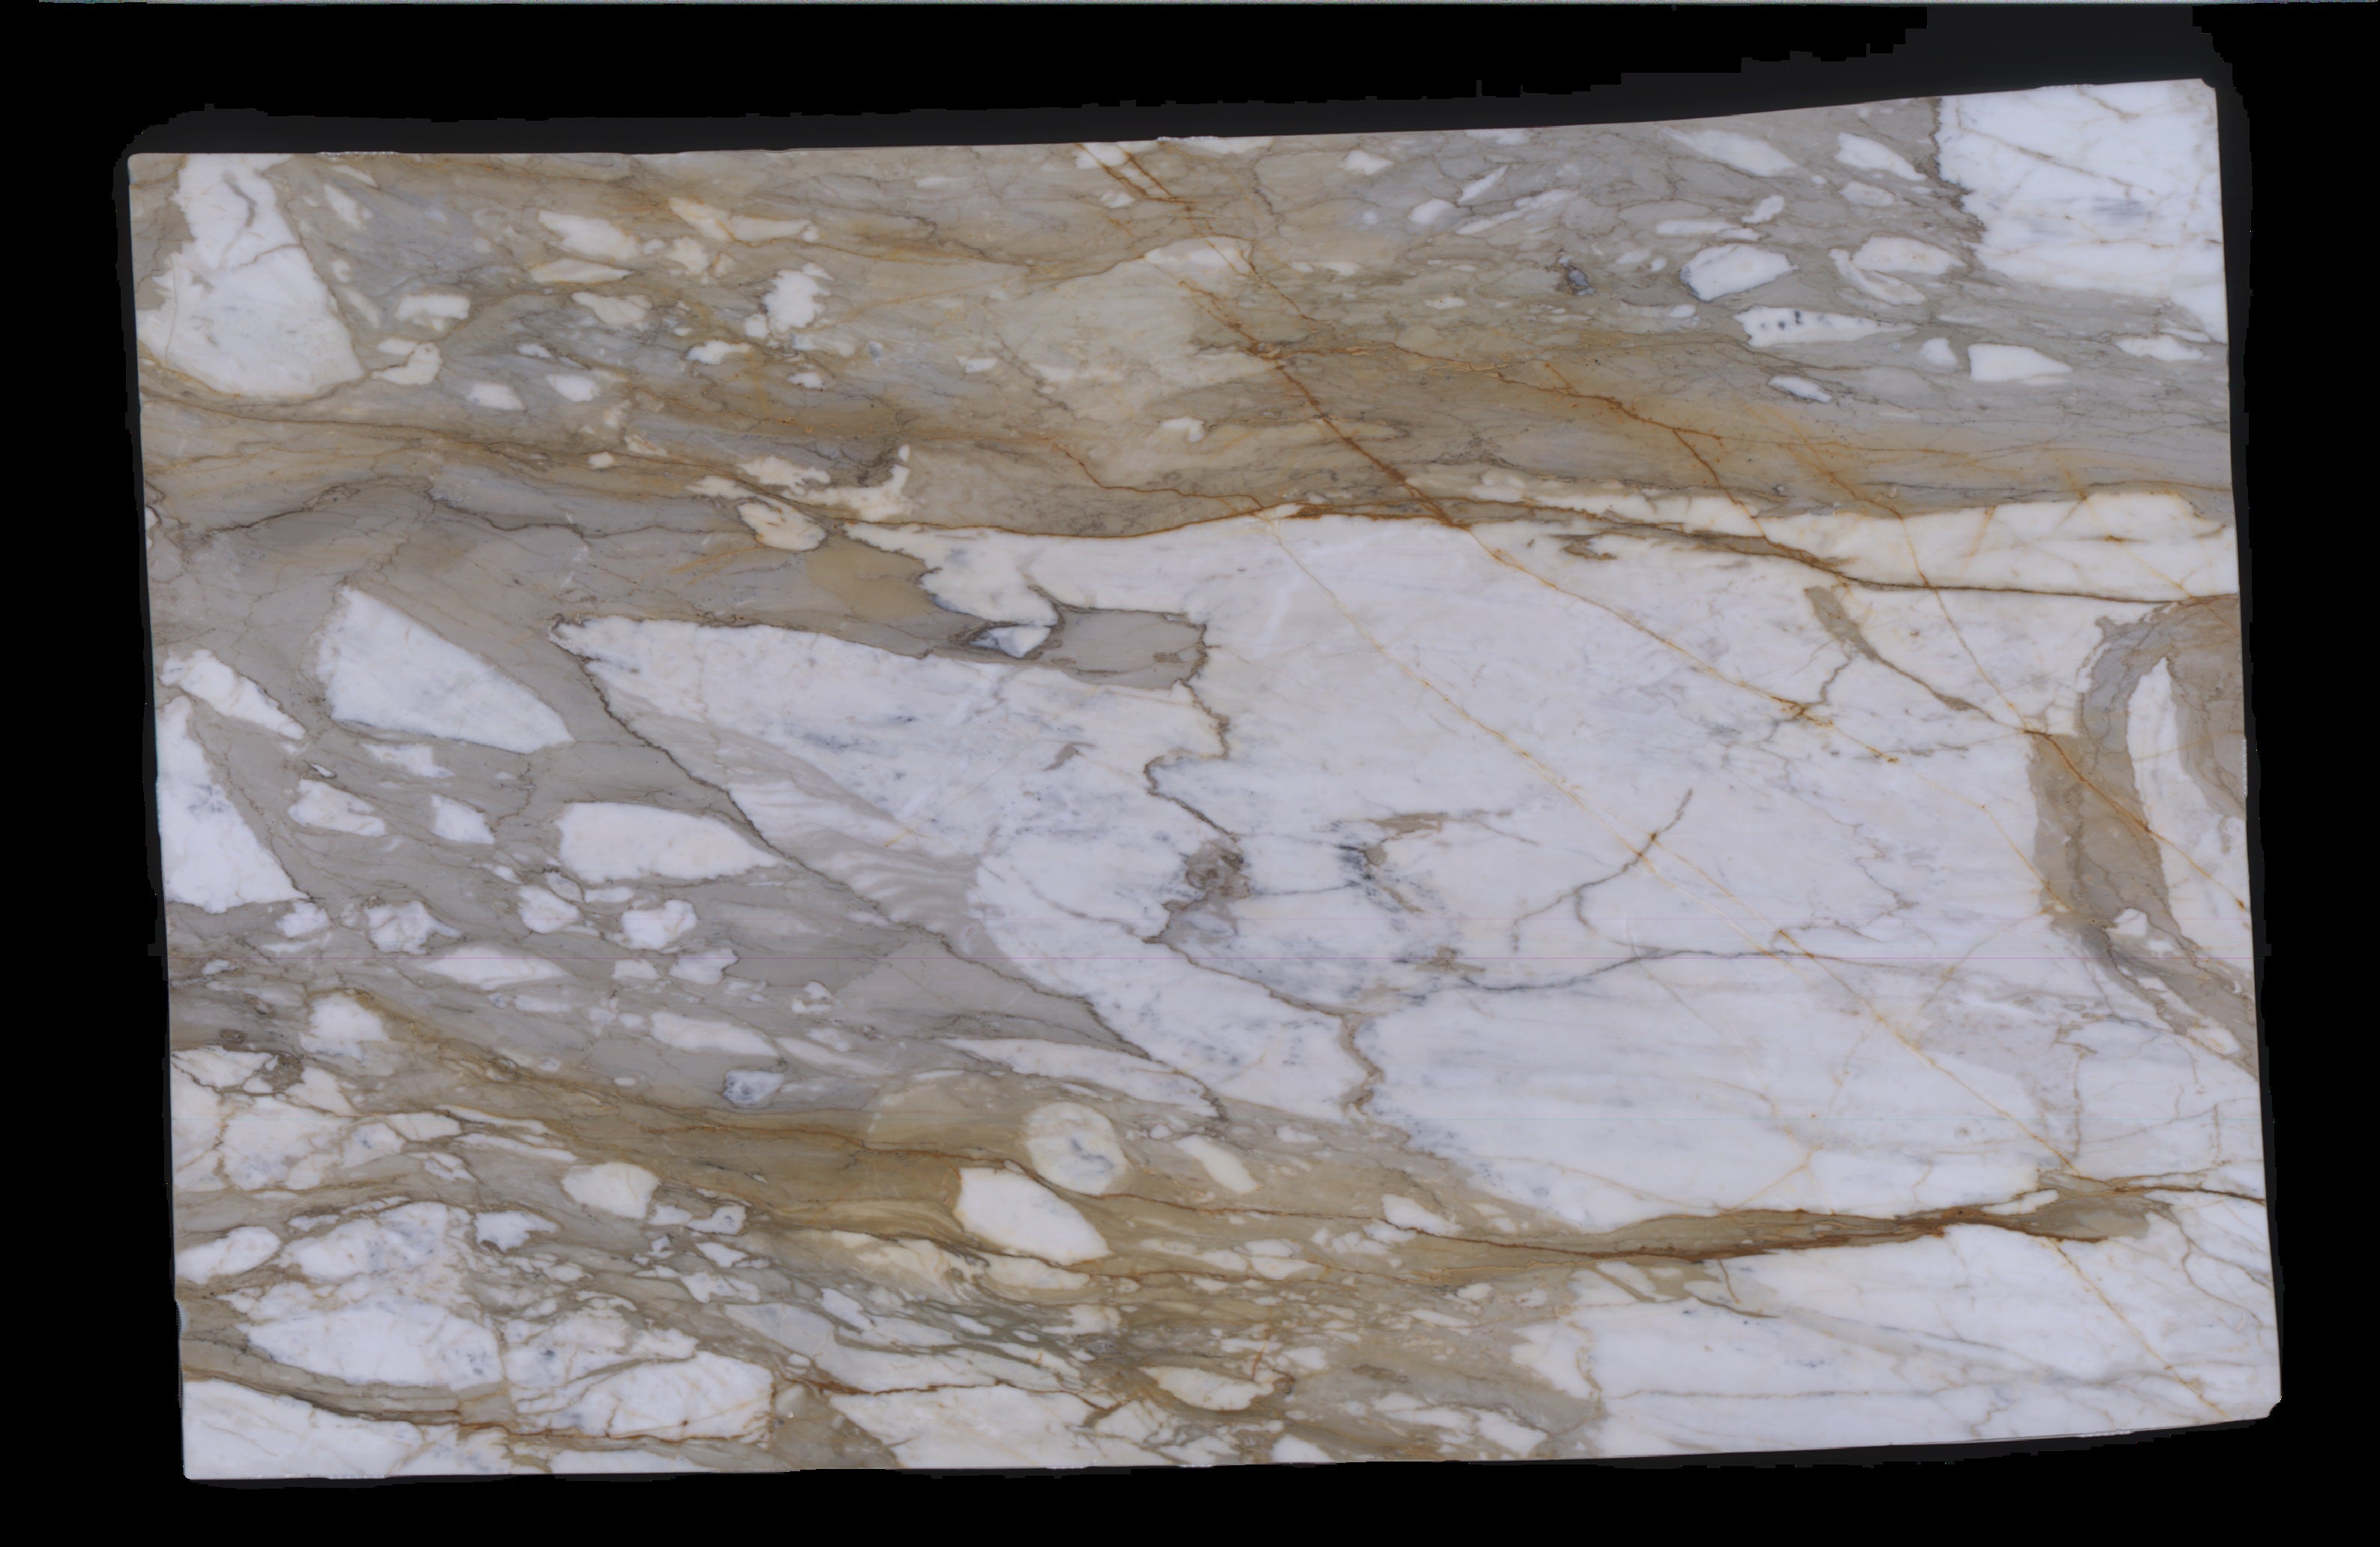  Calacatta Macchia Vecchia Marble Slab 3/4 - 953#37 -  VS 71x112 